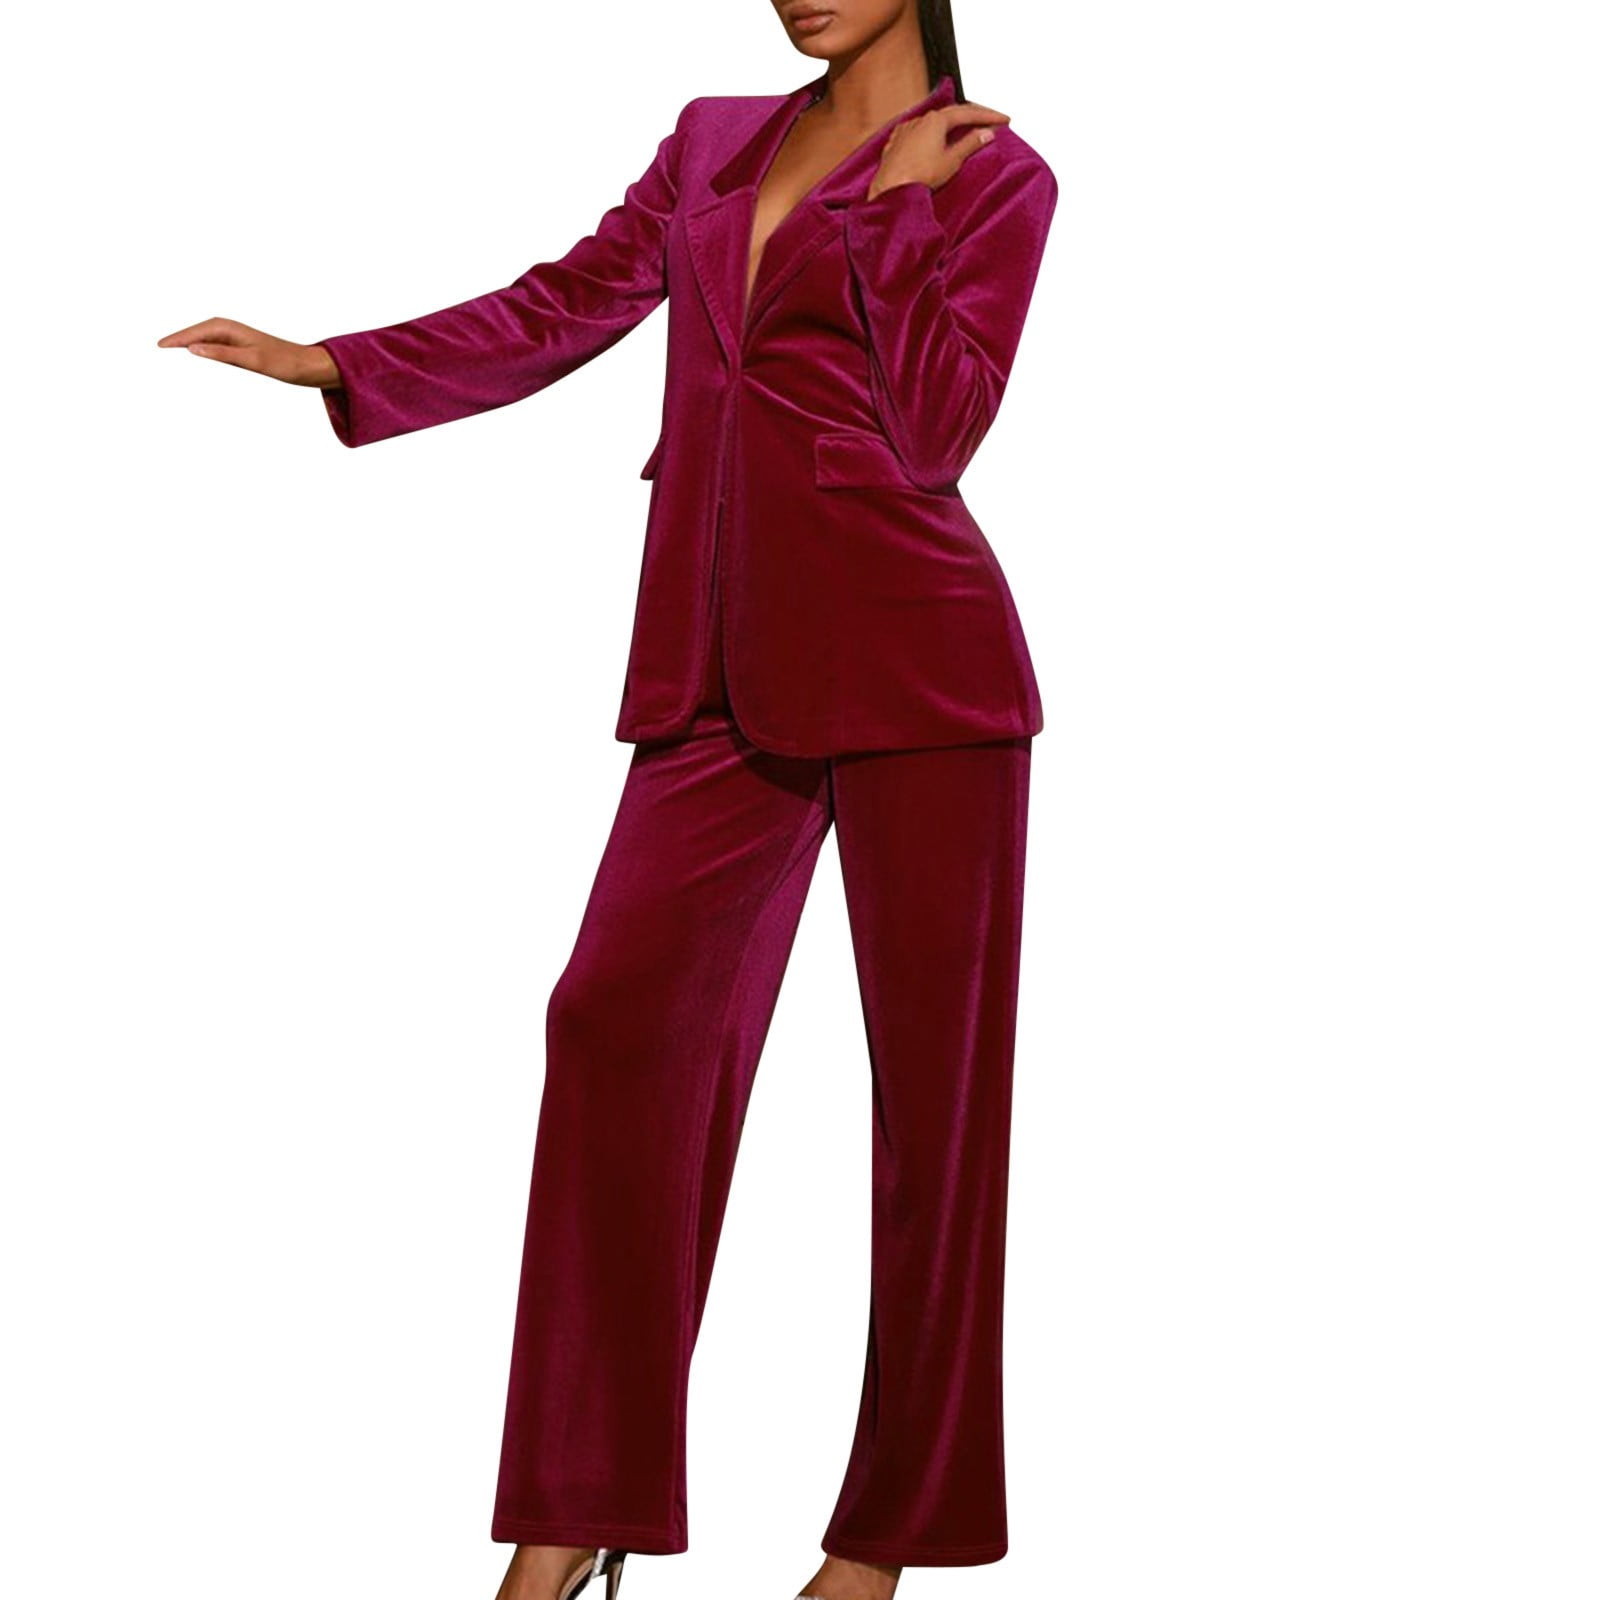 FAKKDUK Elegant Business Suit Sets for Women Pants Suits for Women Dressy 2  Piece Casual Plus Size Open Front Blazer Pant Suit Set Wedding Prom Work